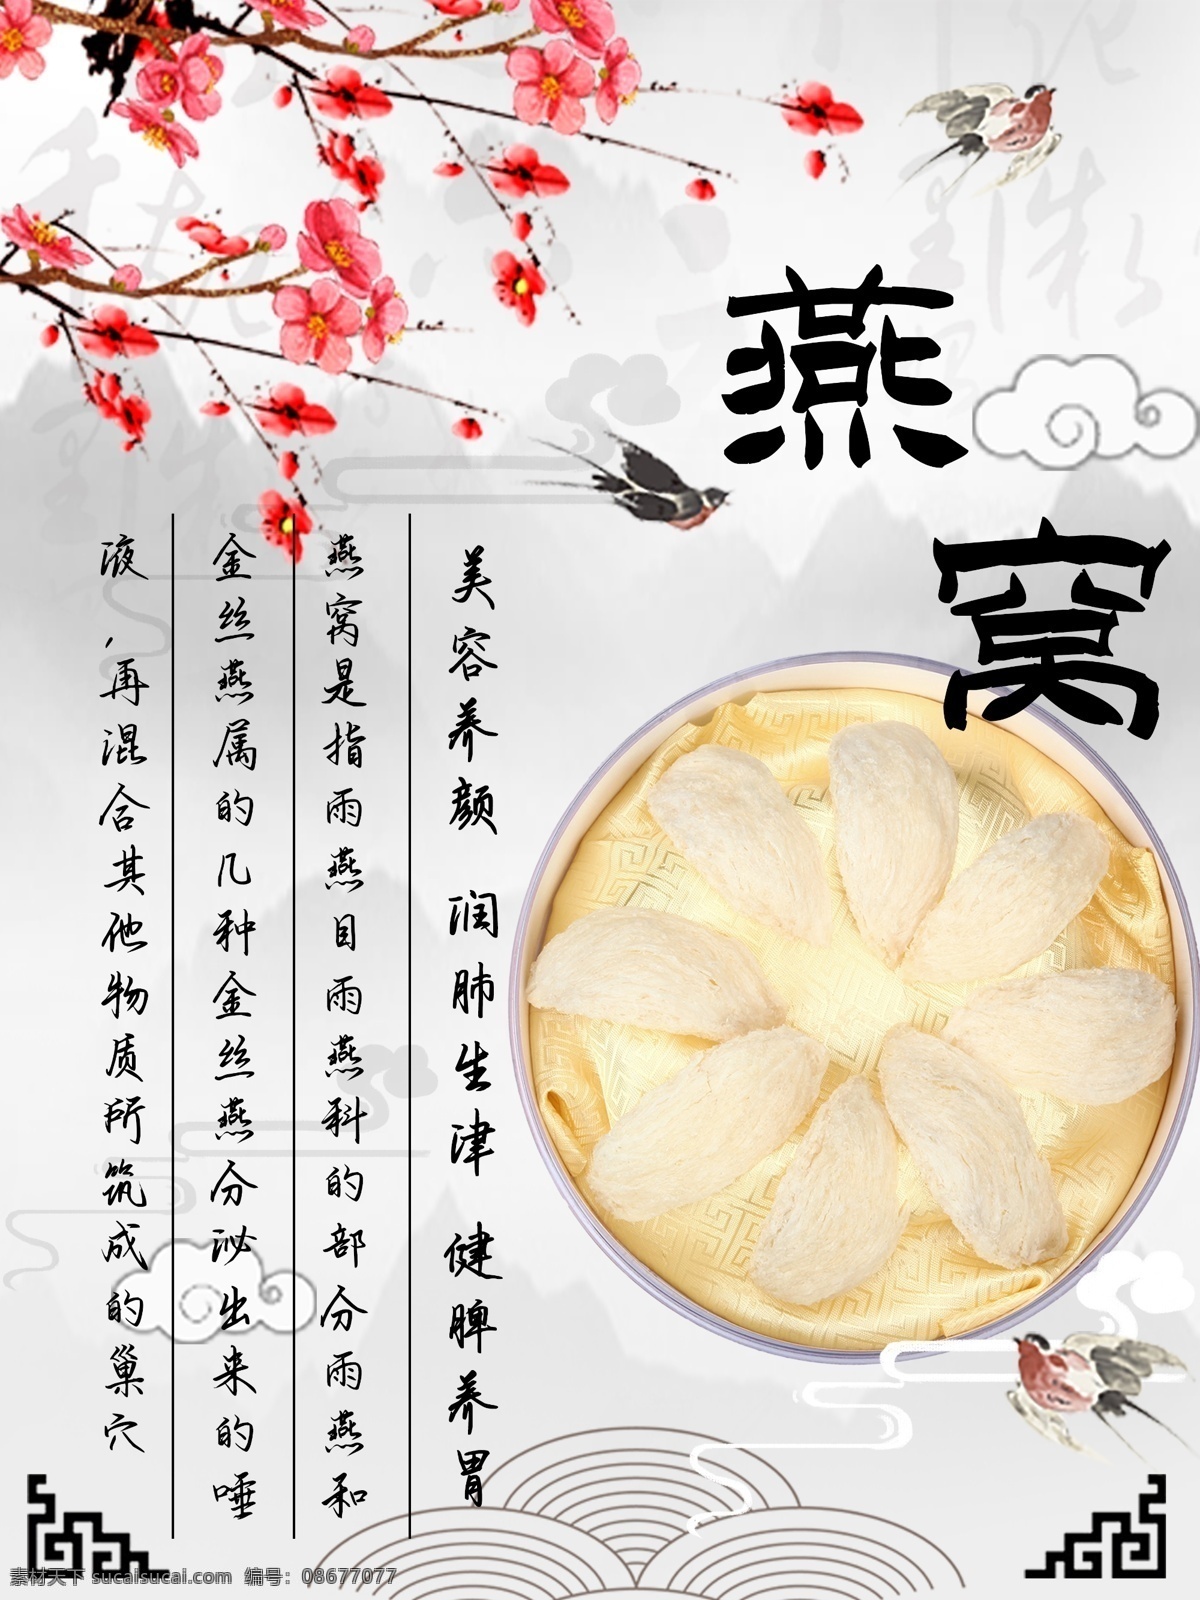 水墨 中国 风 燕窝 养生 海报 中国风 健康 保健 补品 营养 燕子 美食